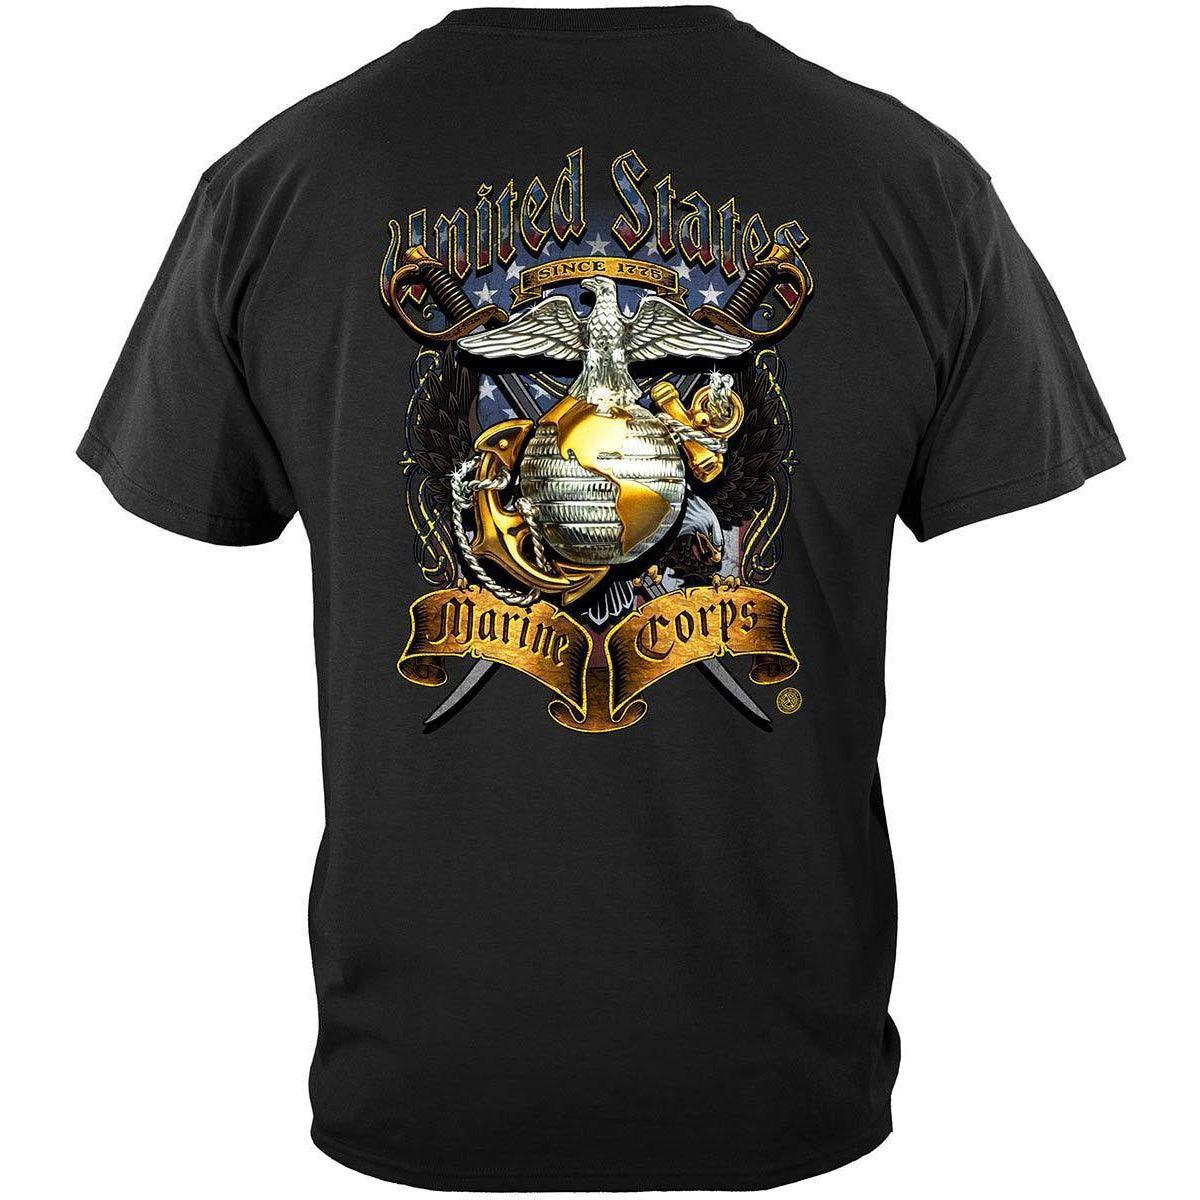 USMC Crossed Swords T-Shirt - Military Republic